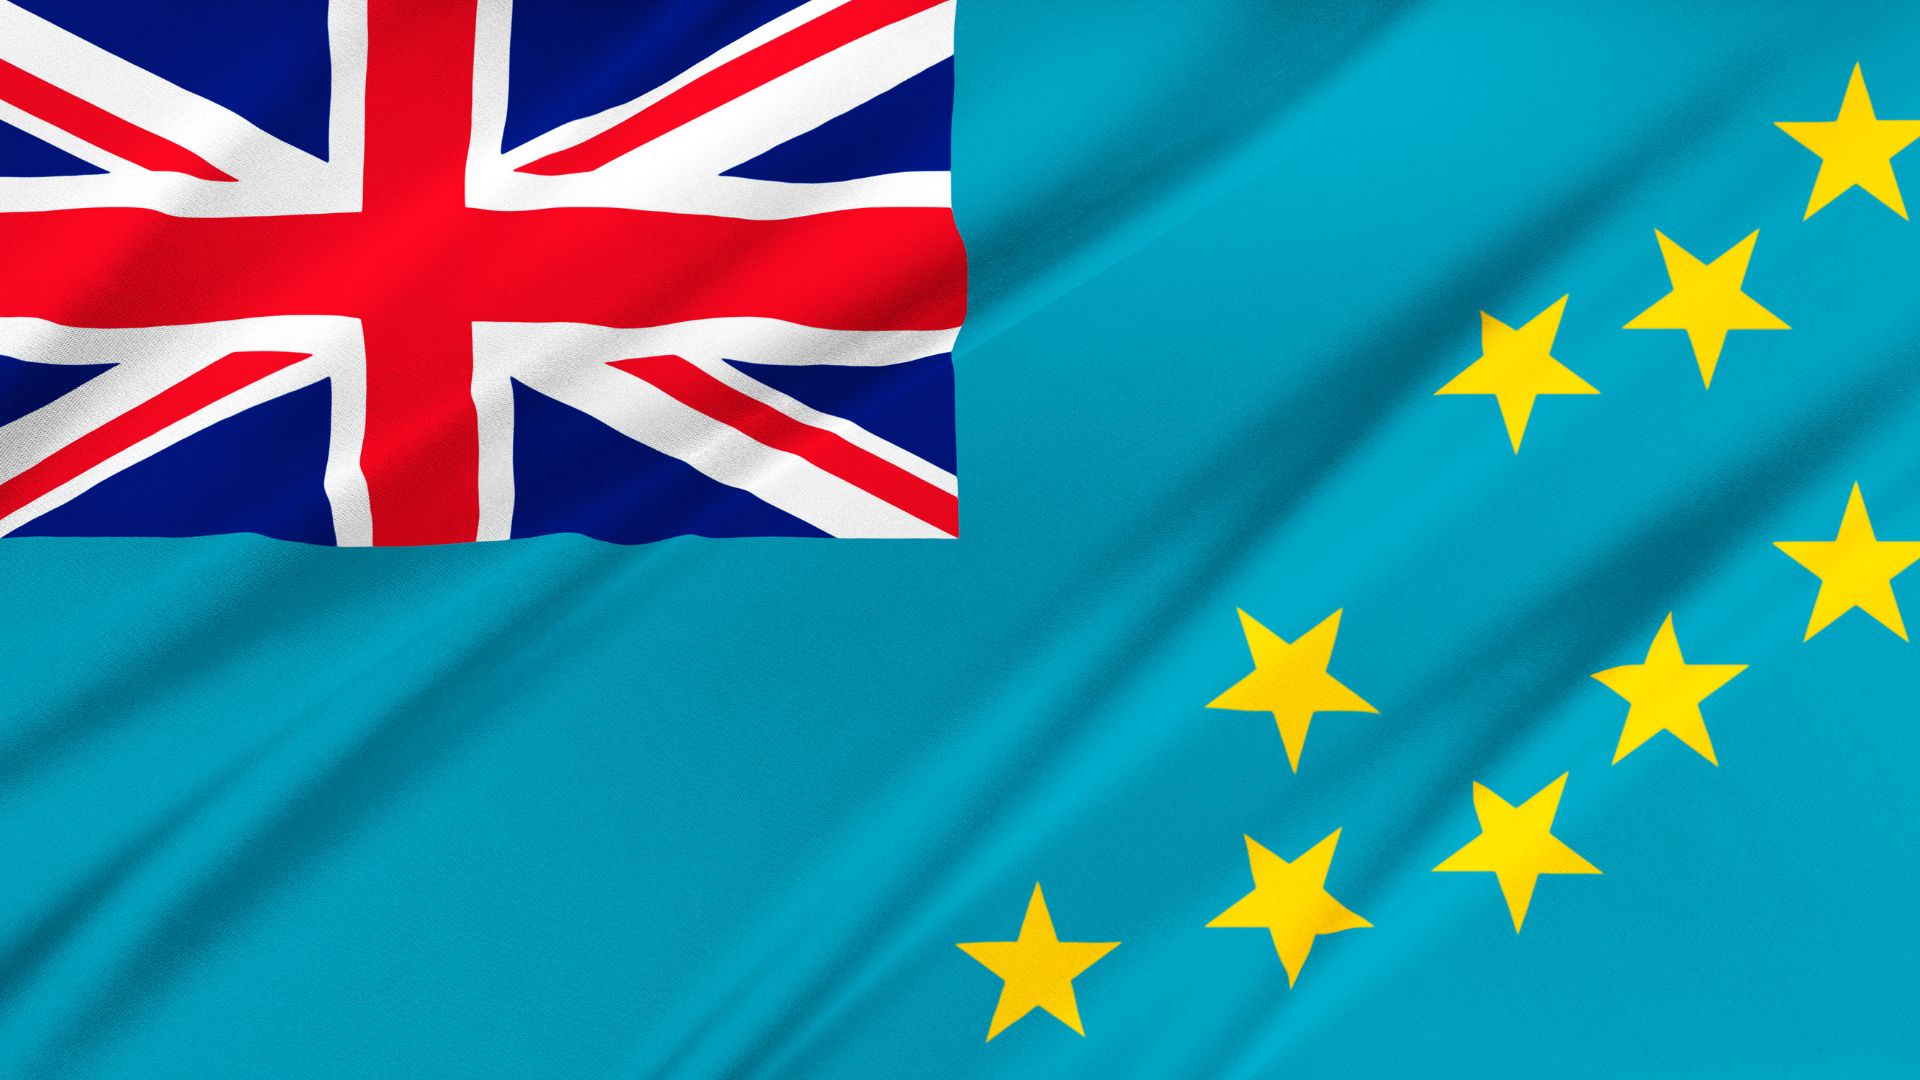 A bandeira de Tuvalu possui uma cor azul clara e a Union Jack no canto superior esquerdo. A bandeira também possui 9 estrelas, representando cada uma das ilhas do arquipélago.